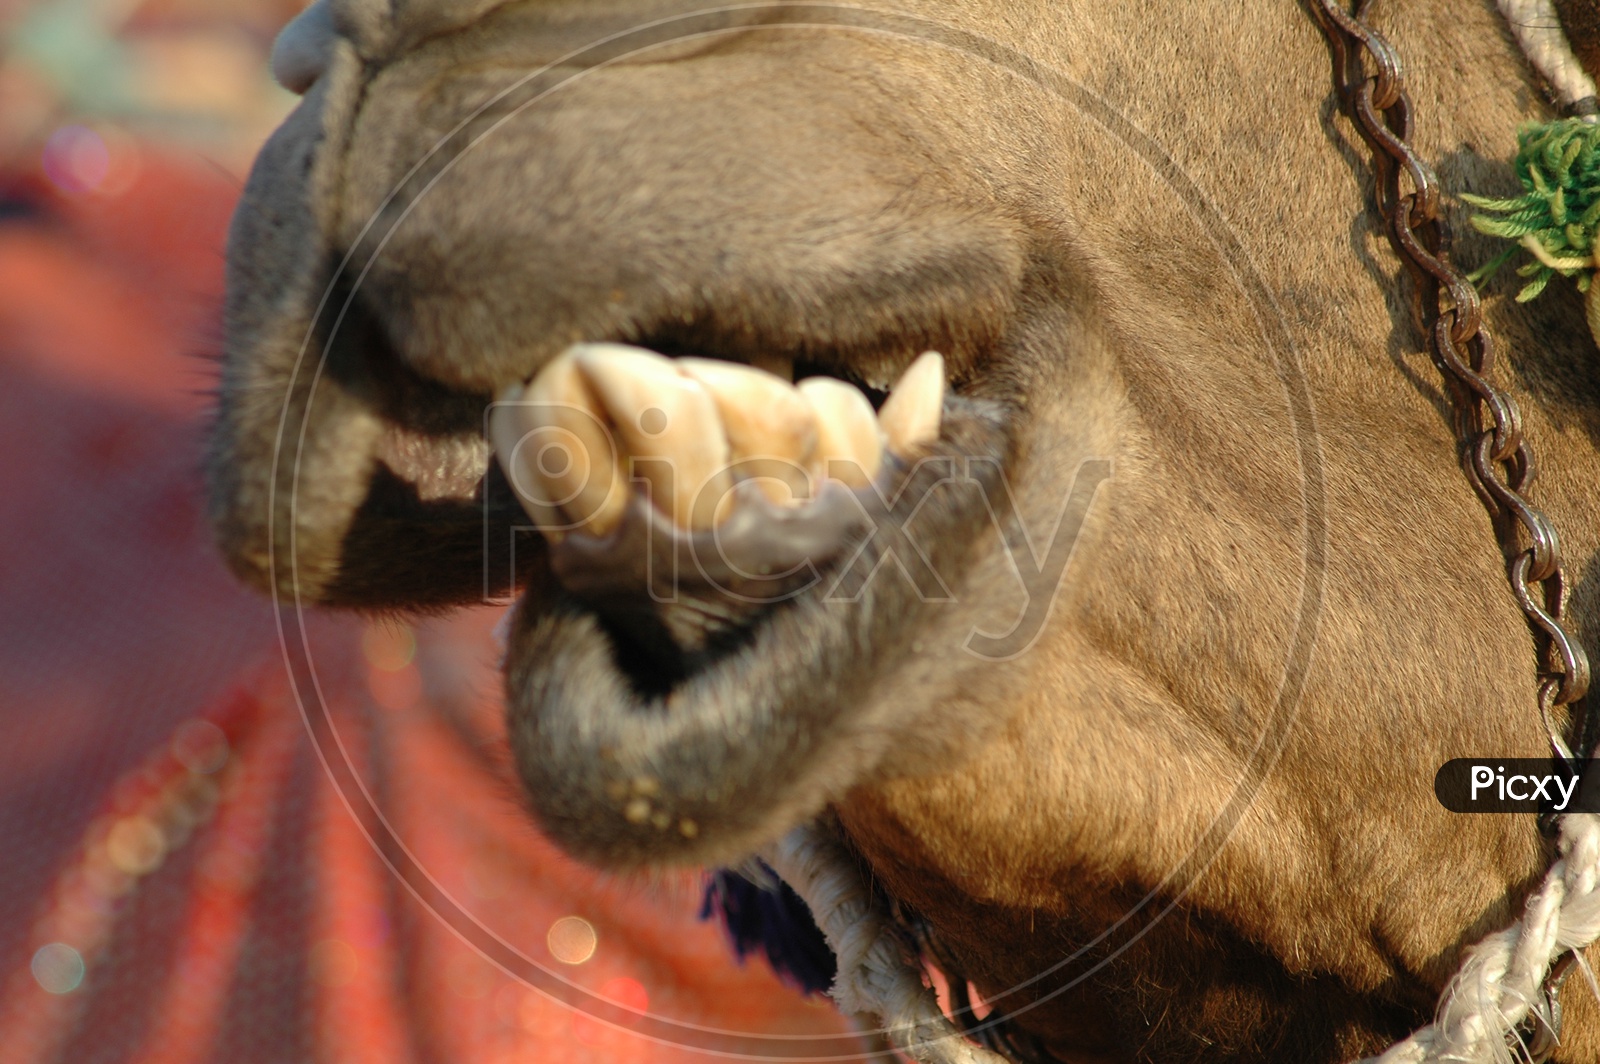 Camel's teeth